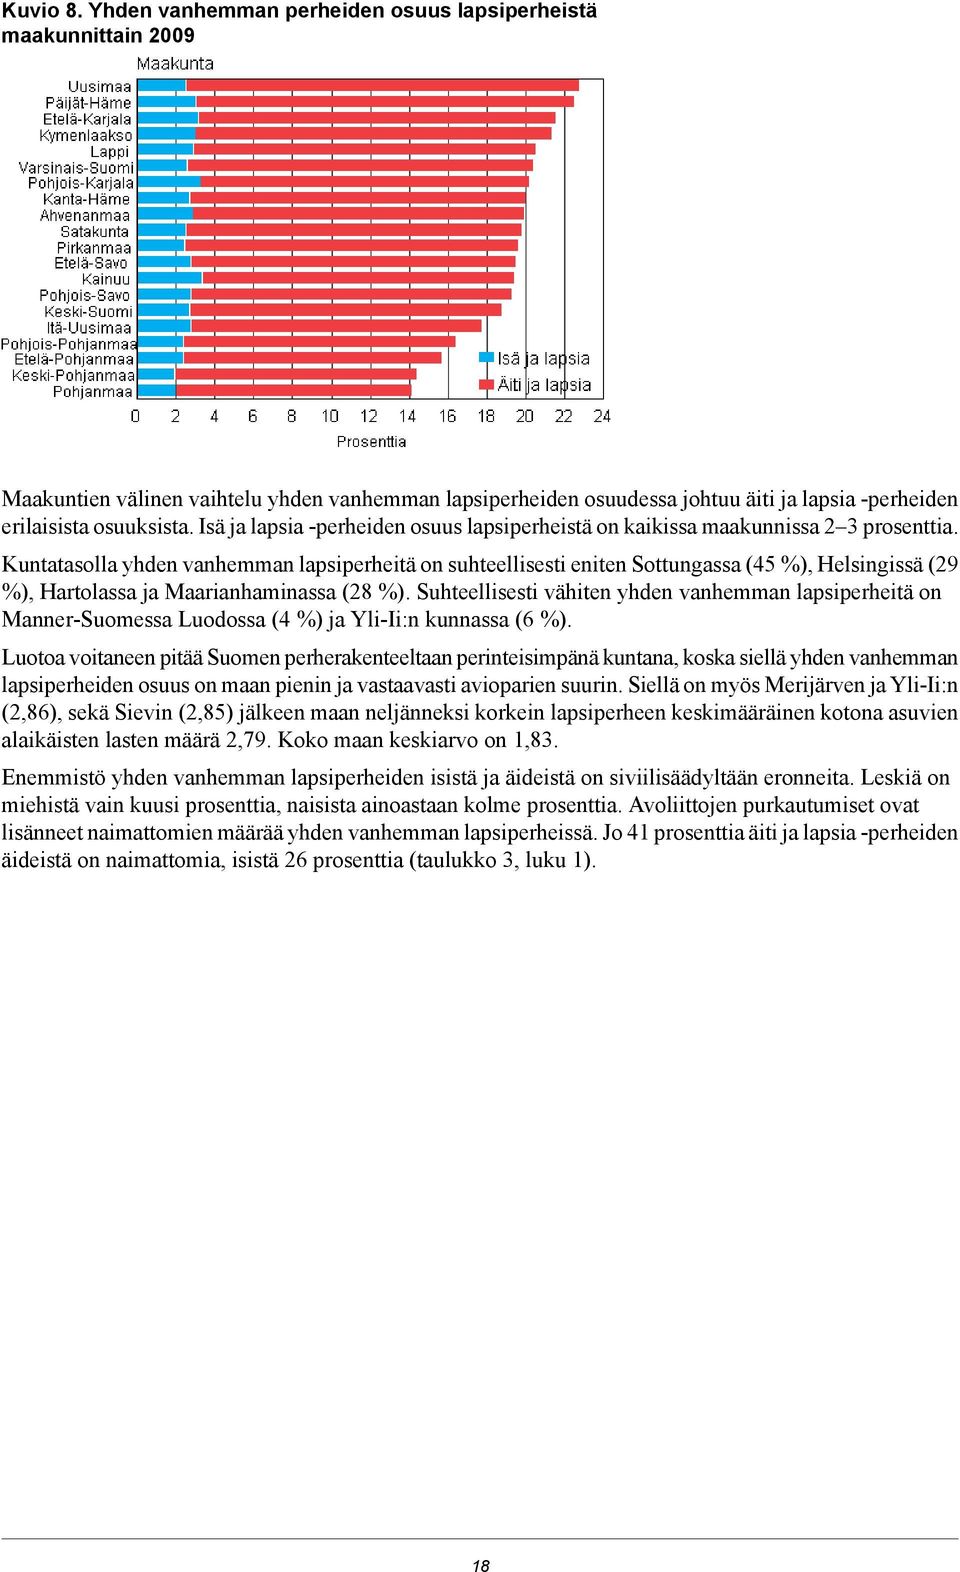 Maarianhaminassa (8 %) Suhteellisesti vähiten yhden vanhemman lapsiperheitä on MannerSuomessa Luodossa ( %) ja YliIi:n kunnassa (6 %) Luotoa voitaneen pitää Suomen perherakenteeltaan perinteisimpänä